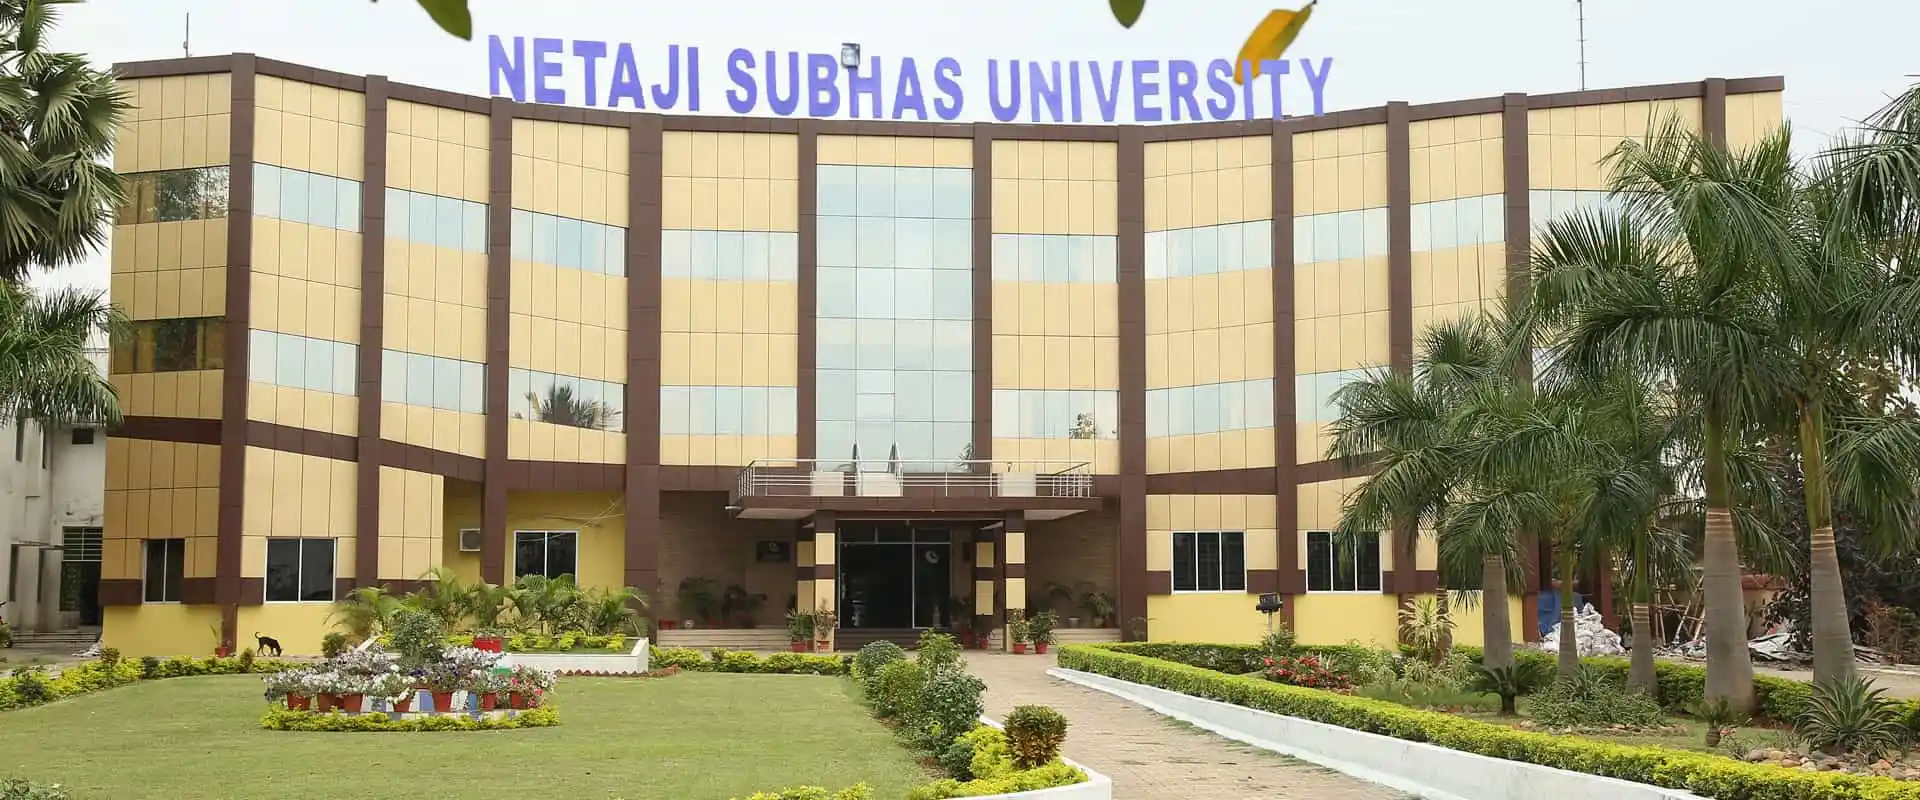 Netaji Subhas University Campus Banner